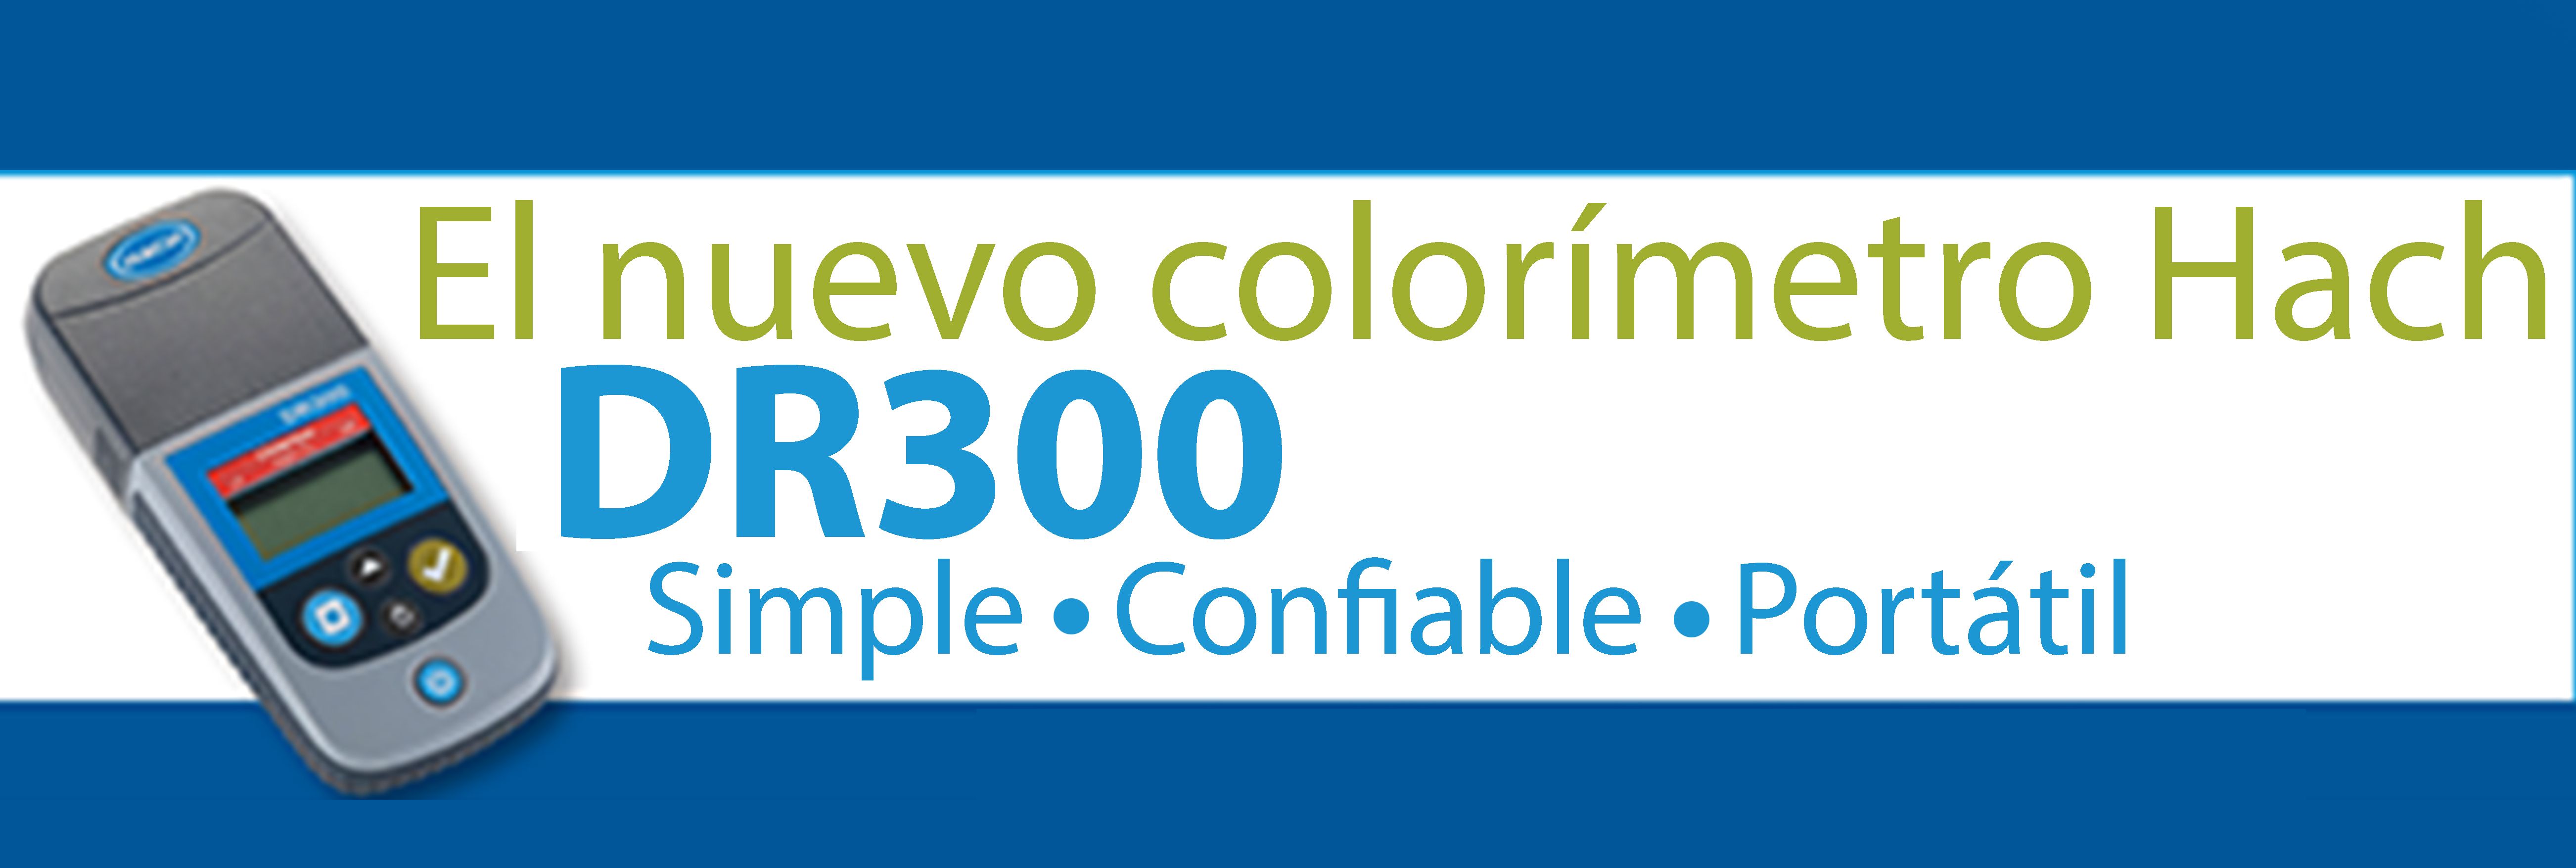 Hach presenta el nuevo colorímetro DR 300